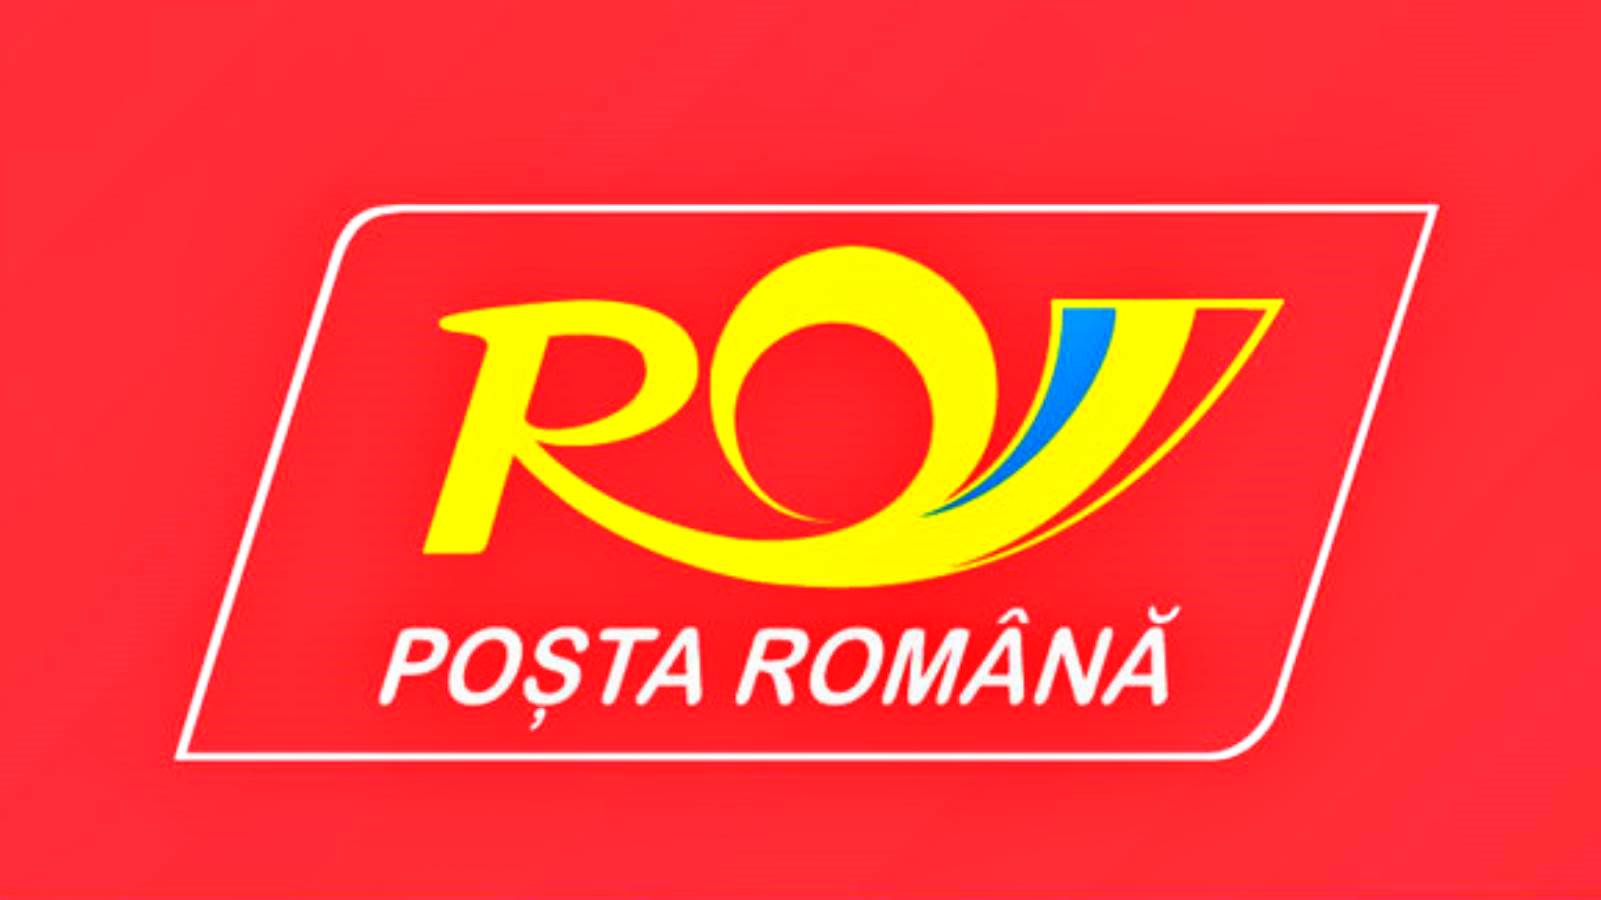 Roemeense post opgelet. Kwetsbare pakketten verzonden